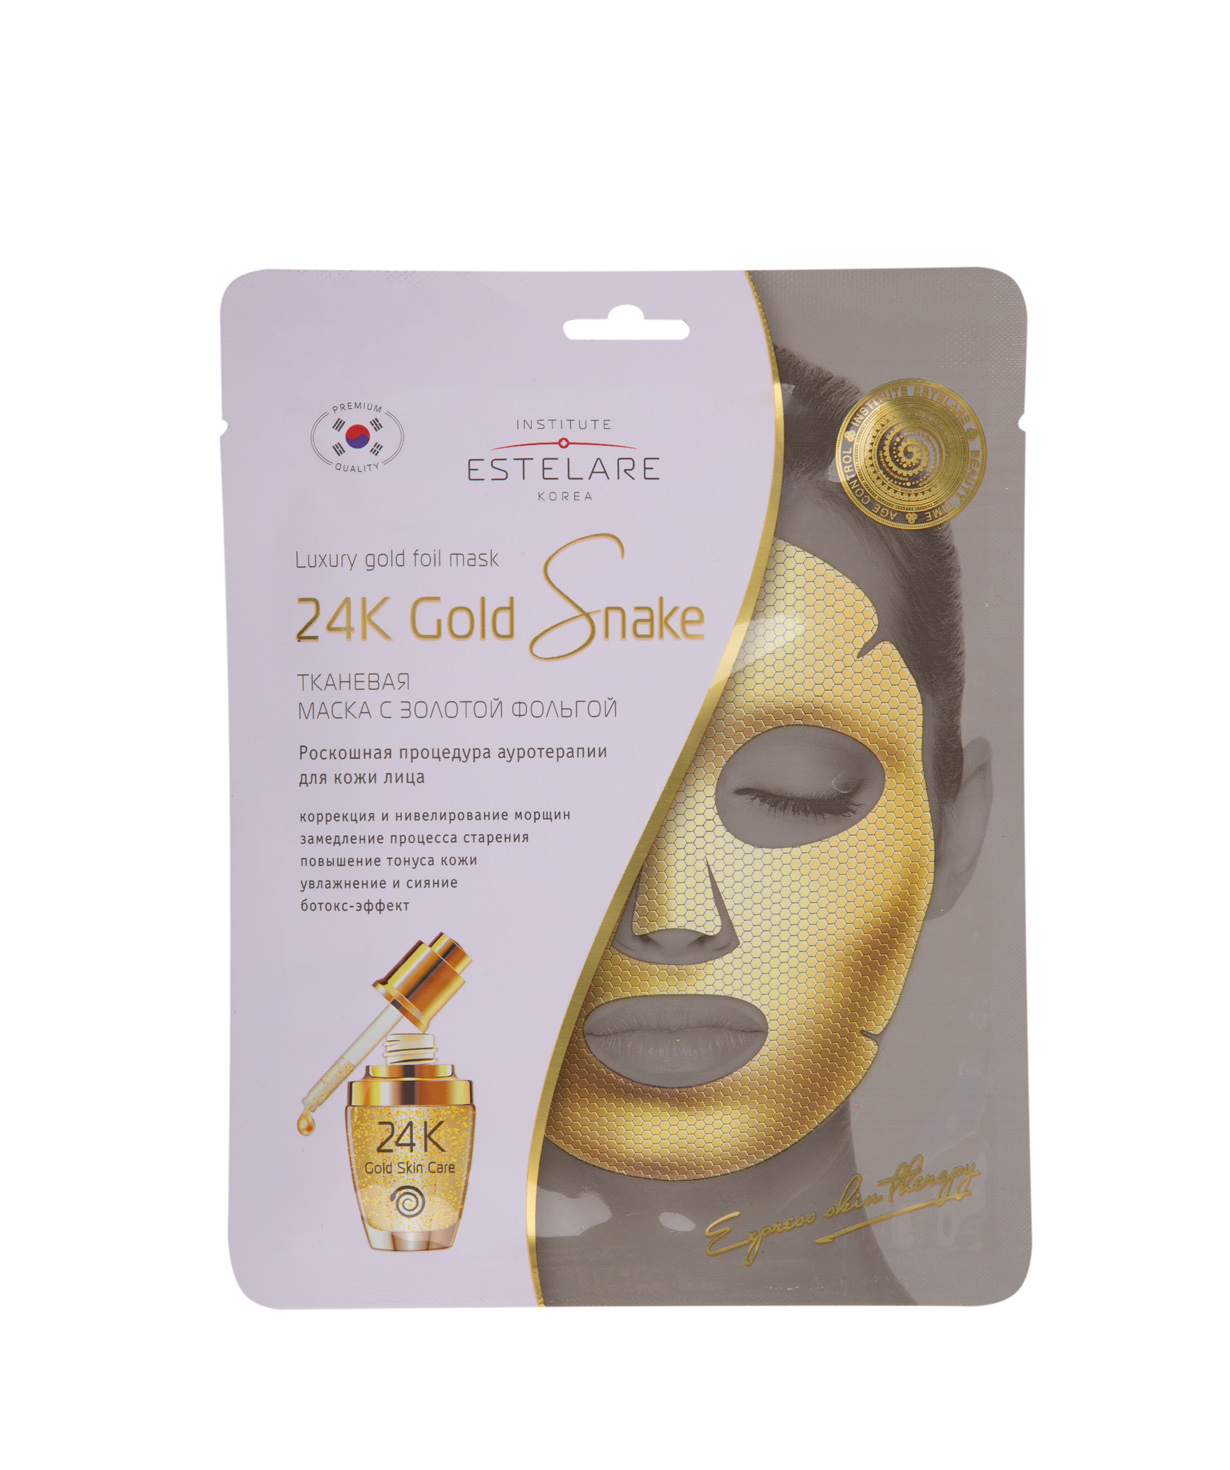 Коллекция `Estelare` тканевых масок  24К Gold